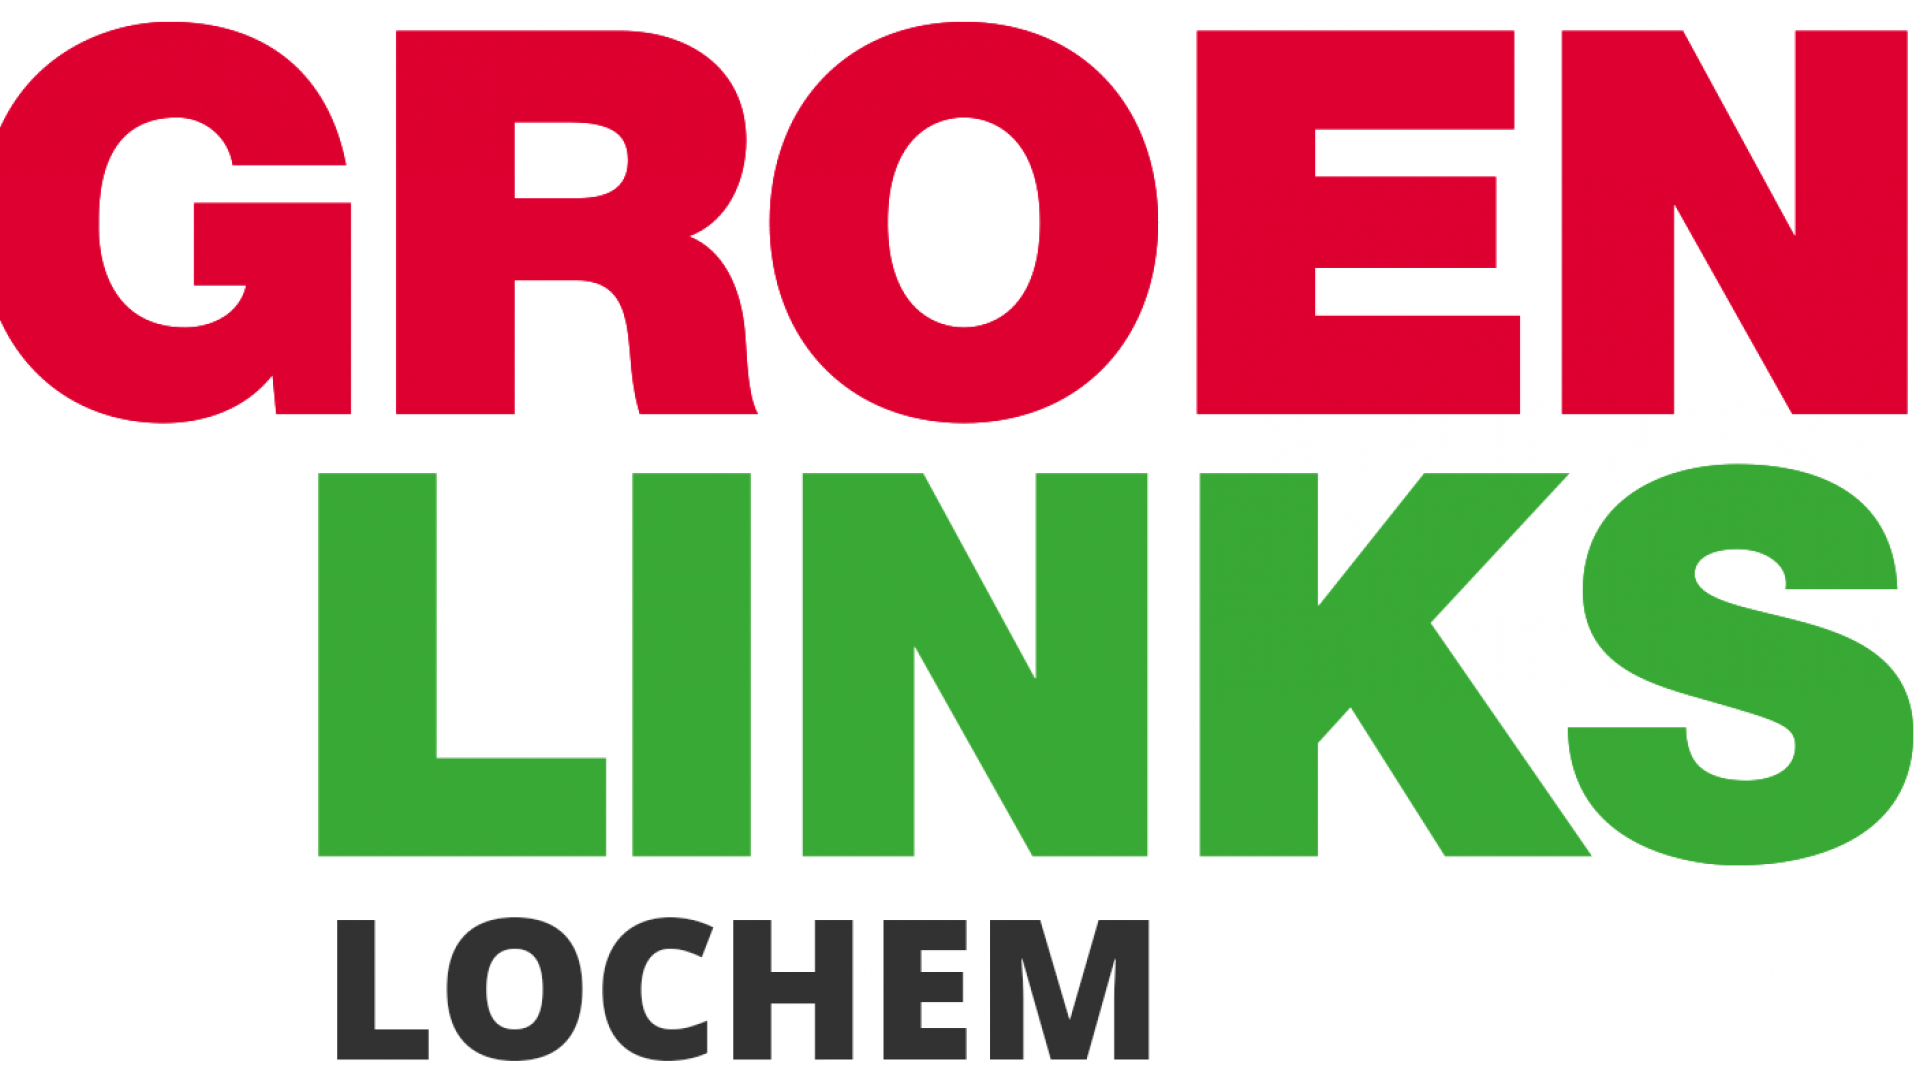 Lochem logo